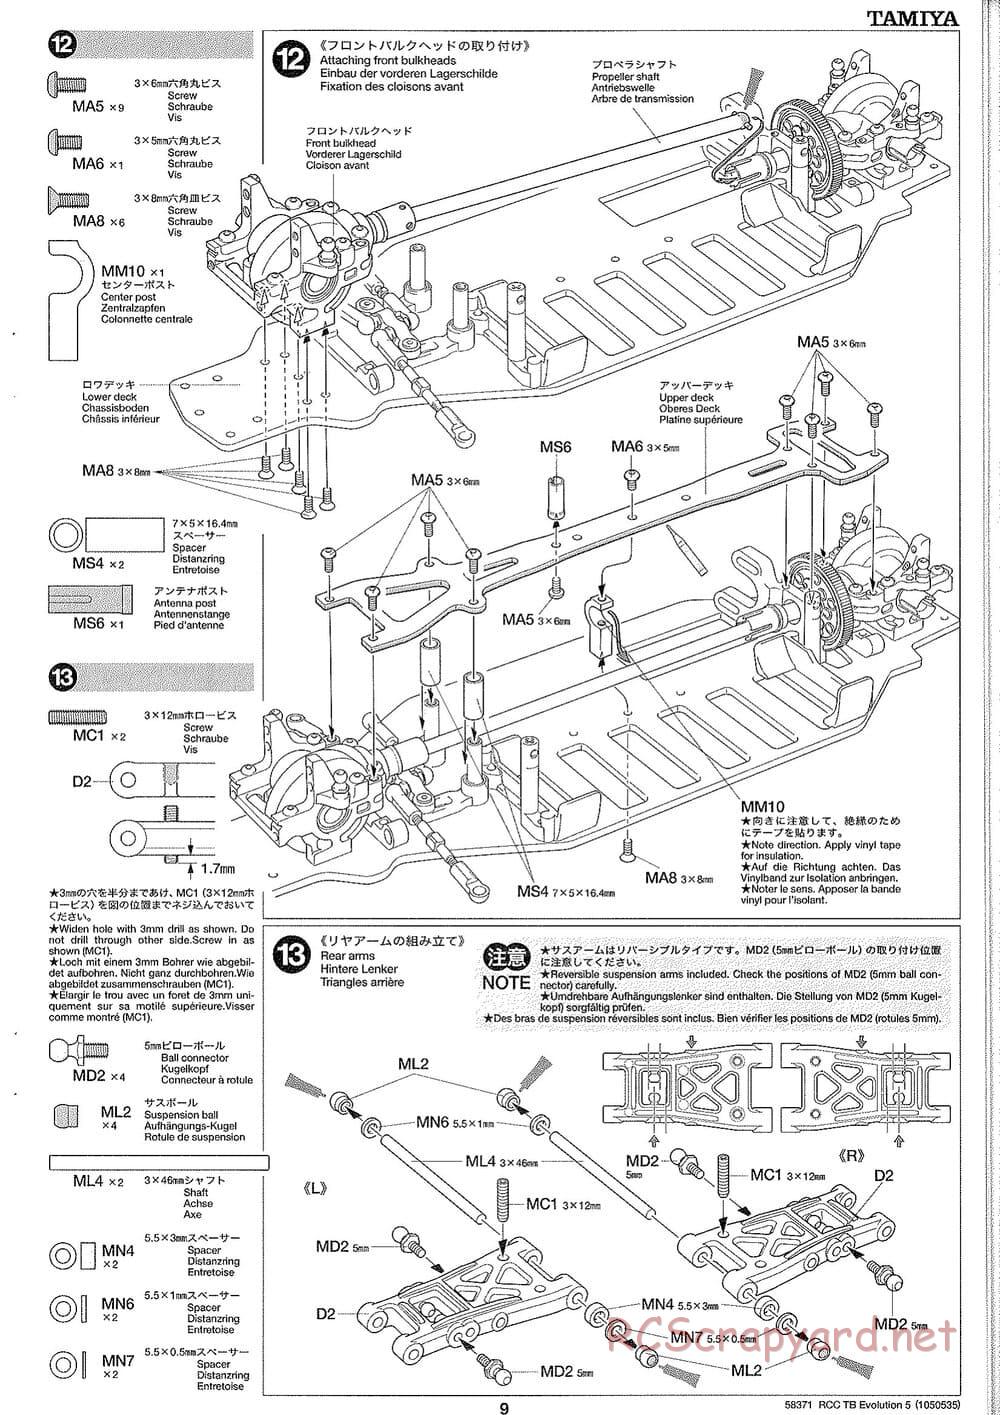 Tamiya - TB Evolution V Chassis - Manual - Page 9